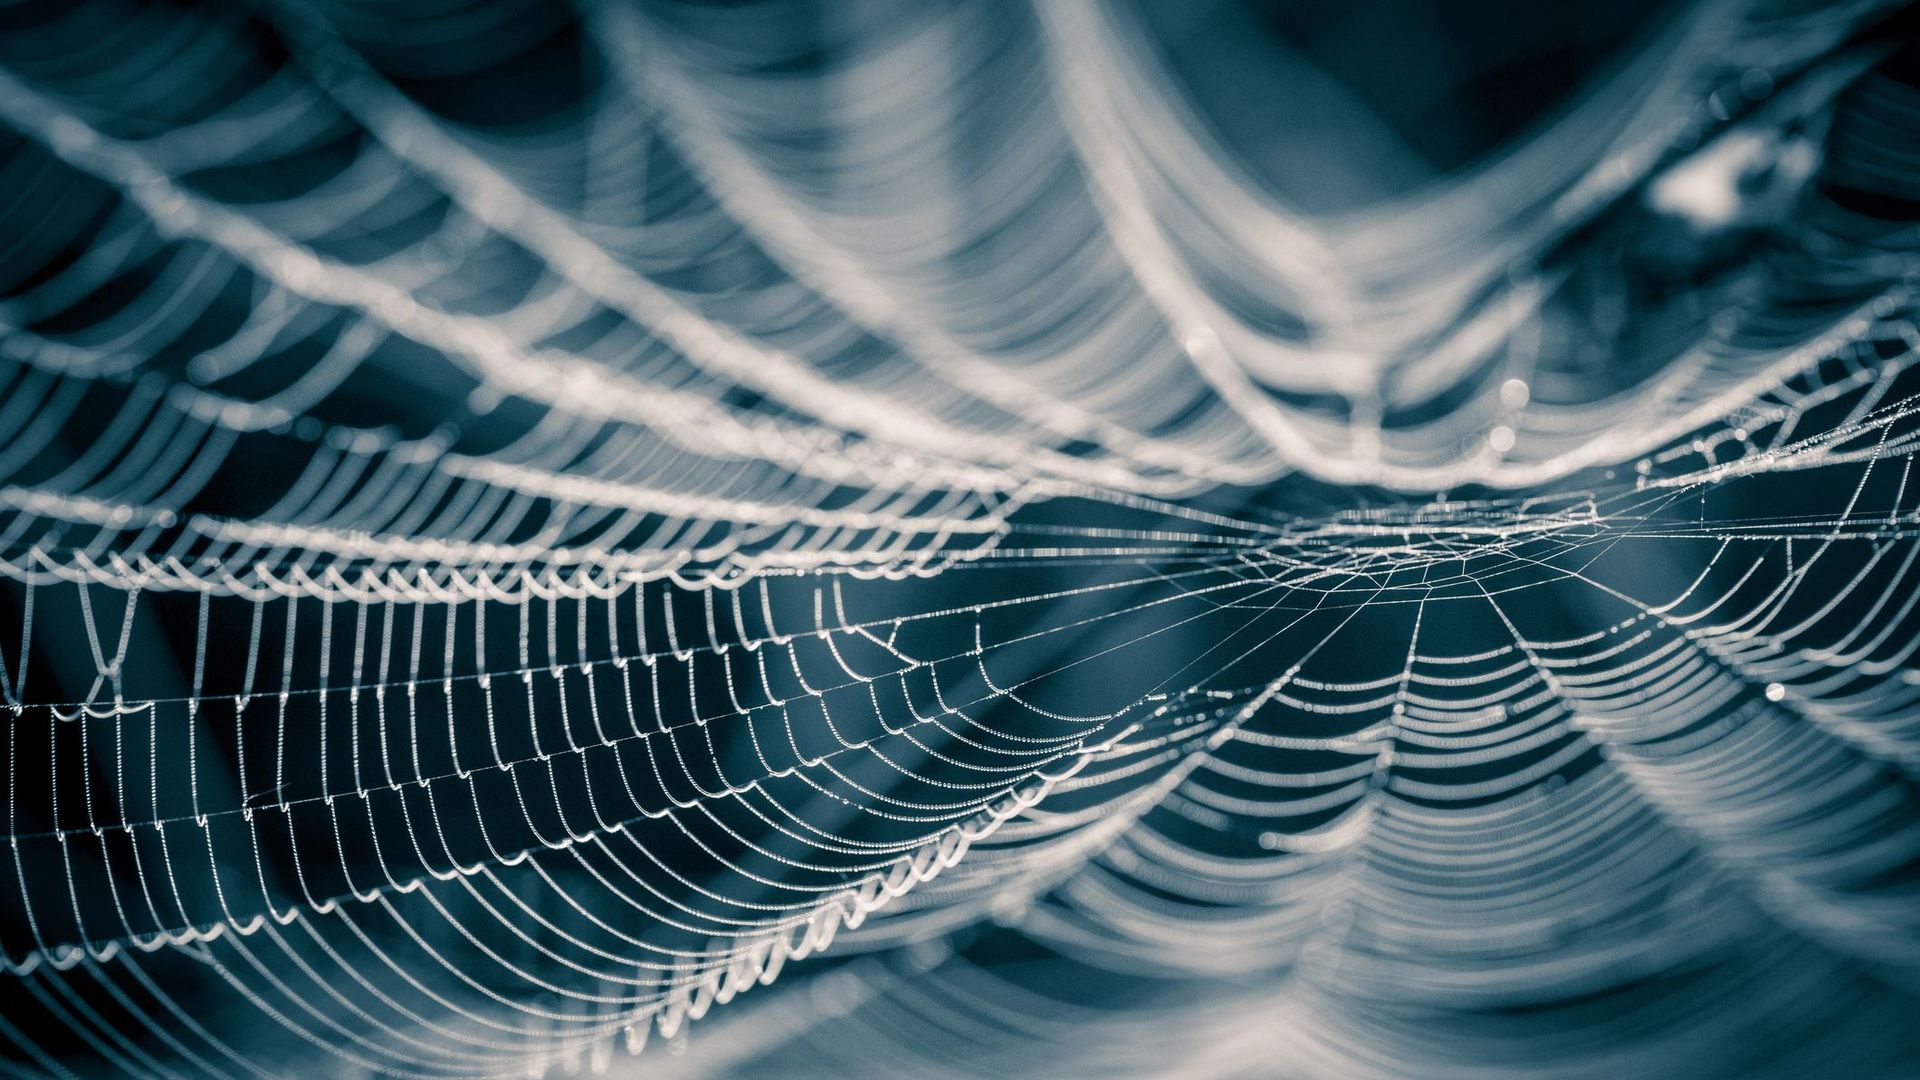 La toile d'araignée, une matière innovante en passe de révolutionner la mode ?